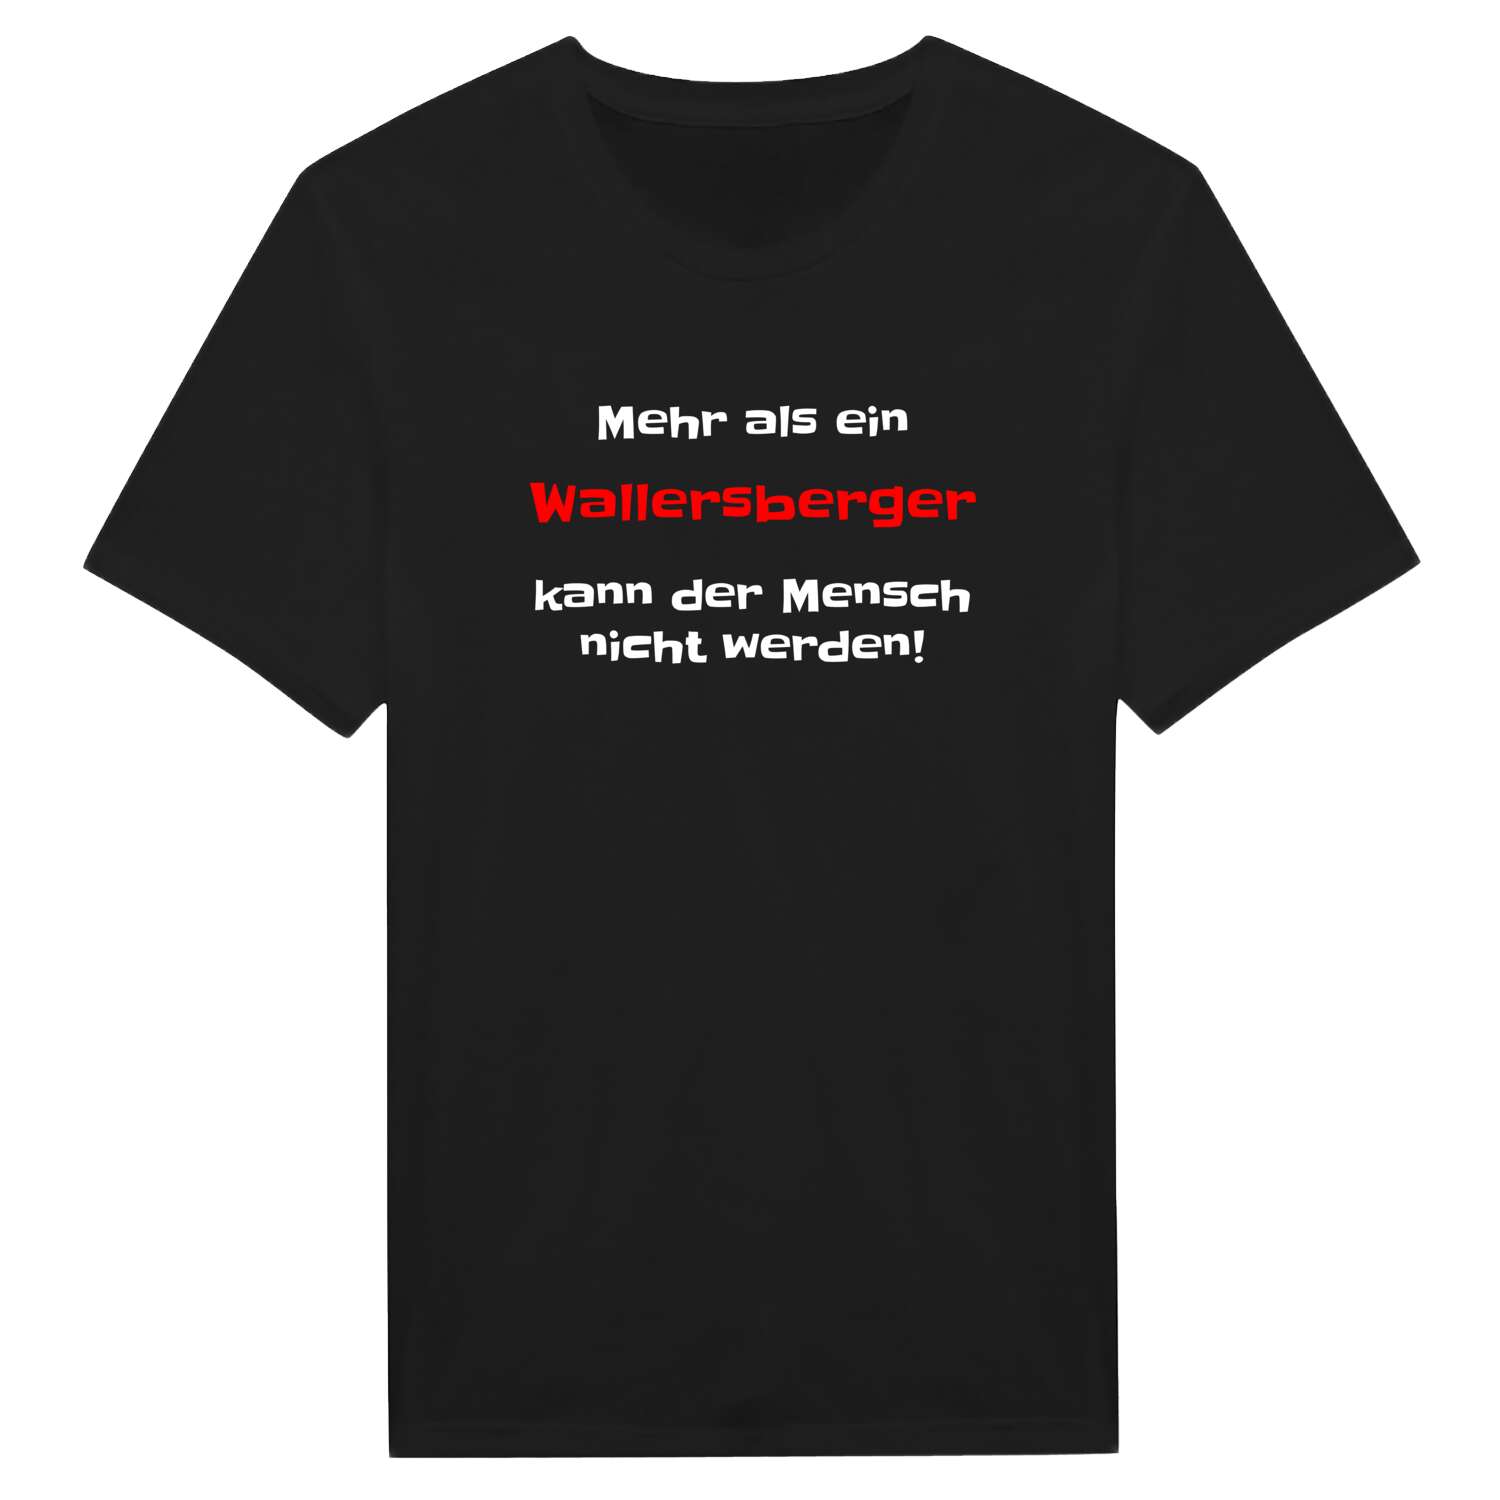 Wallersberg T-Shirt »Mehr als ein«